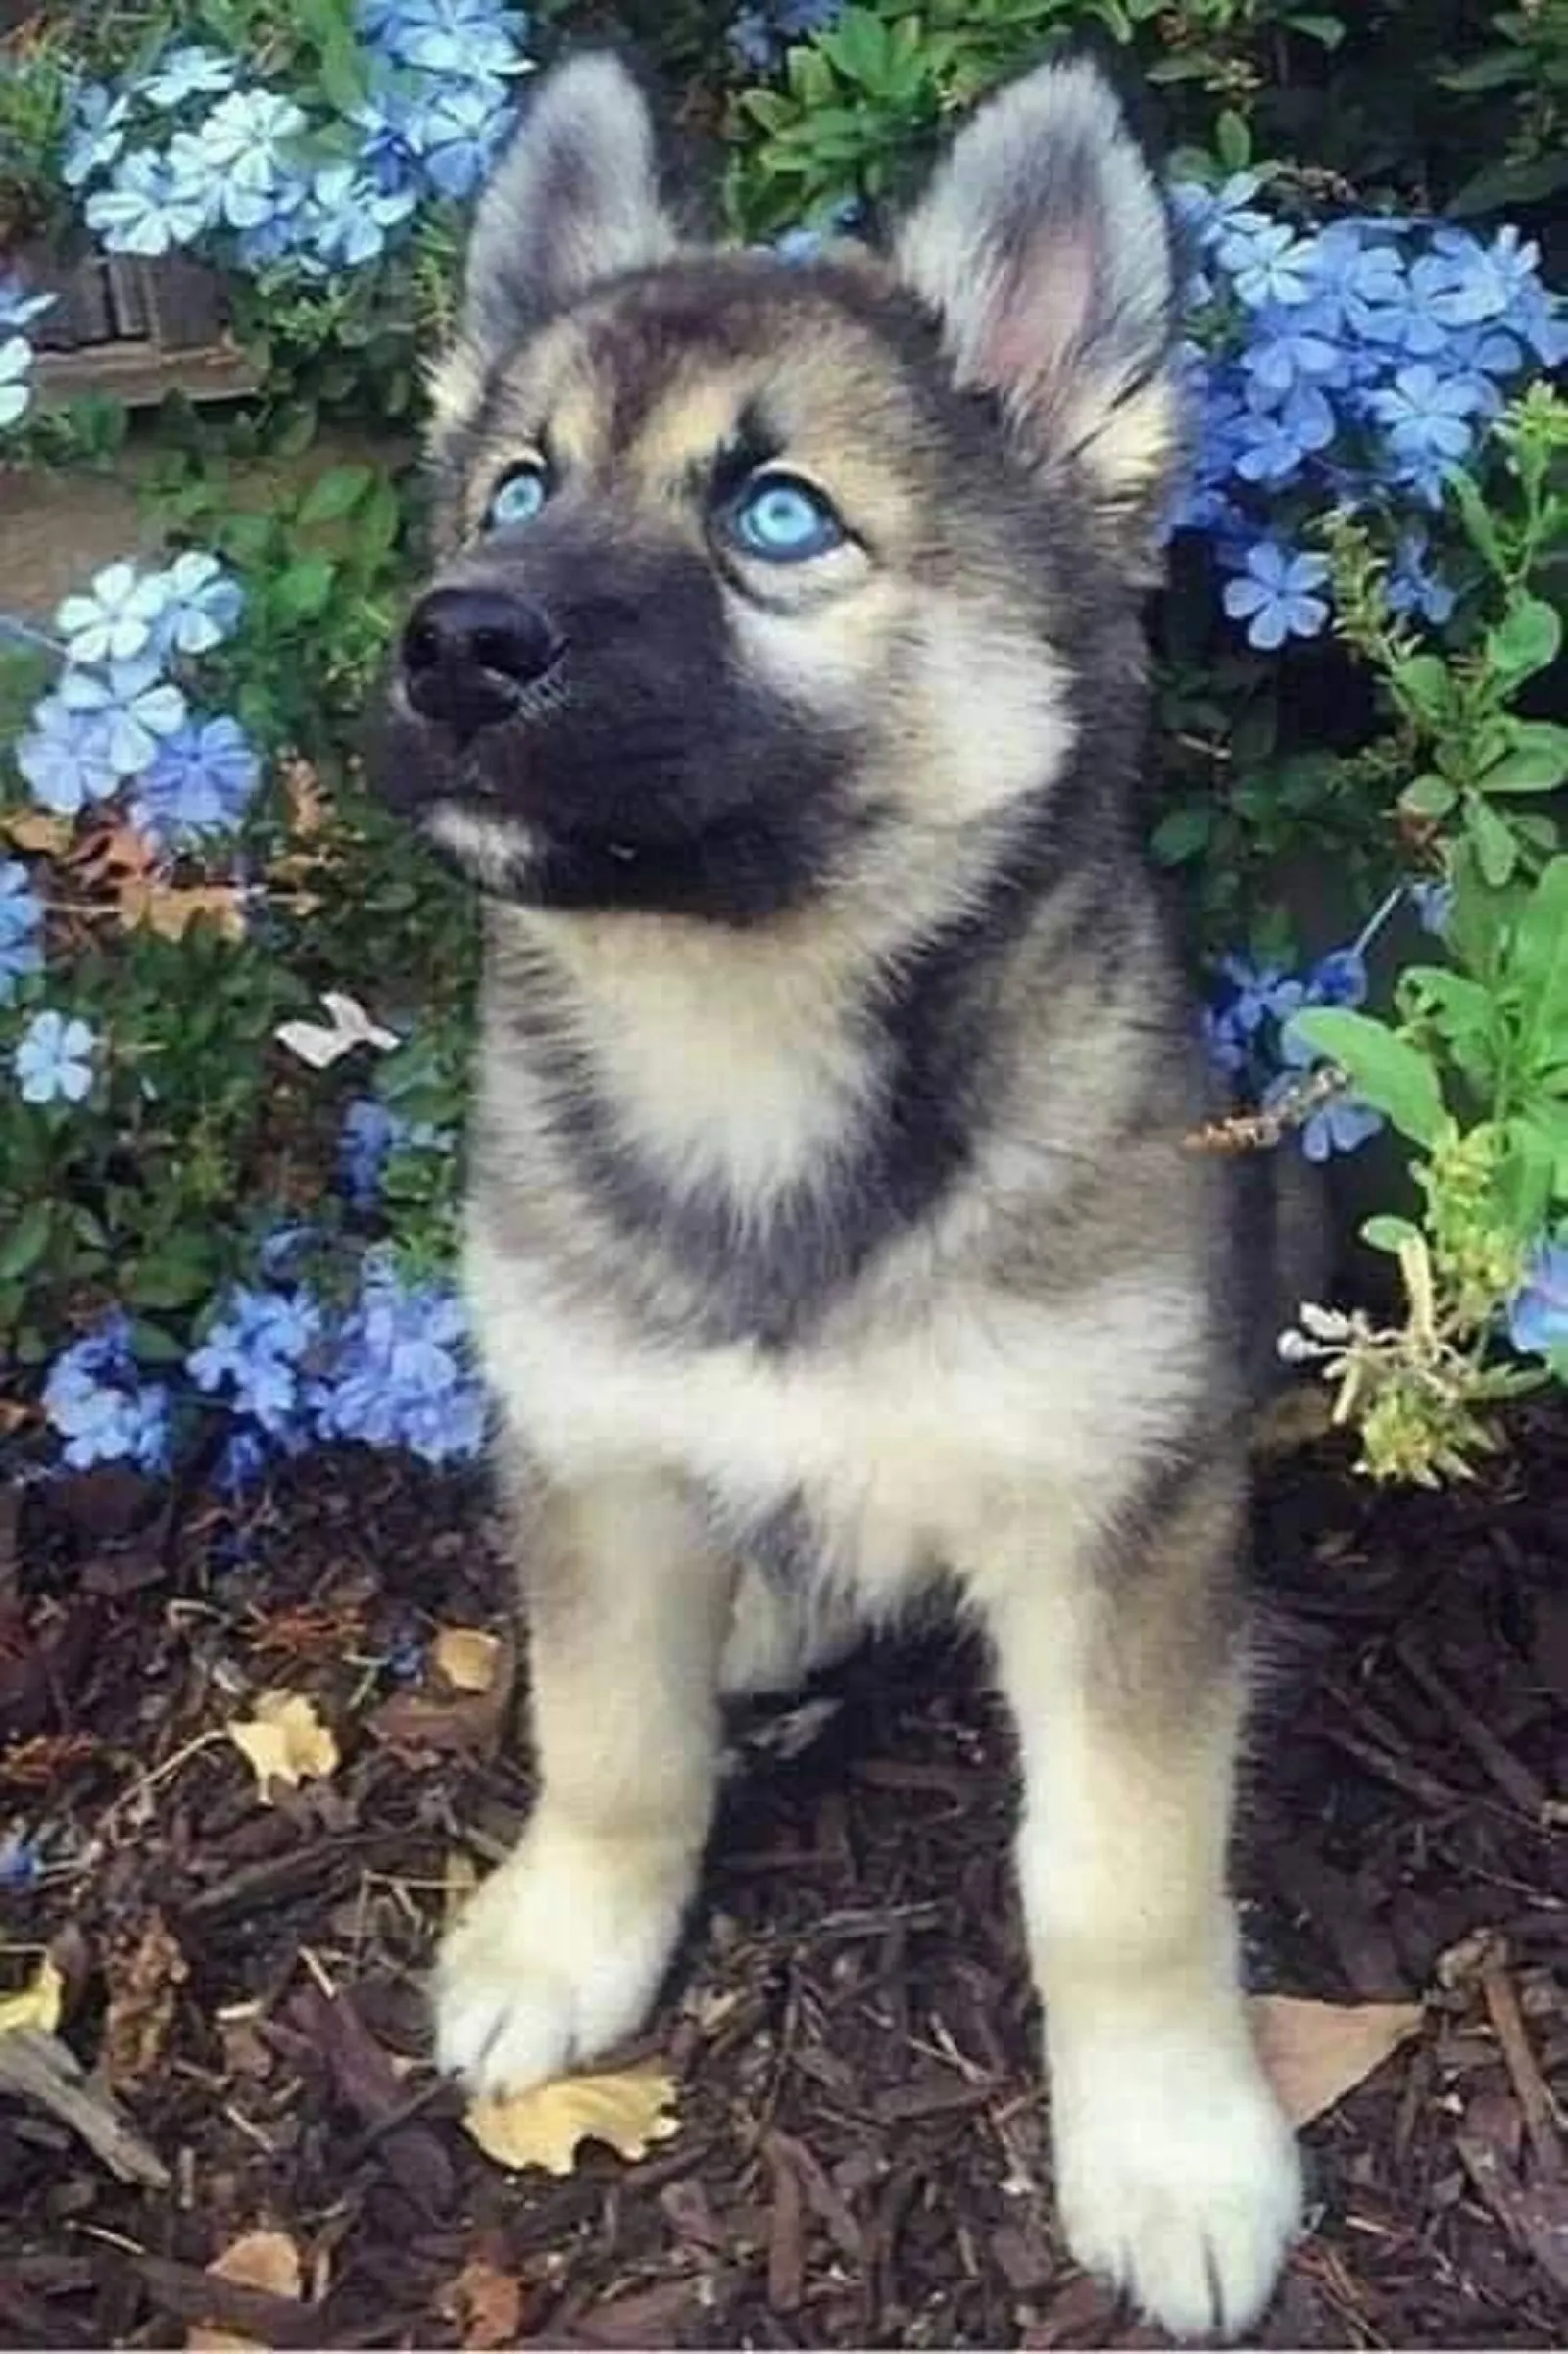 cute german shepherd puppy with blue eyes in the garden